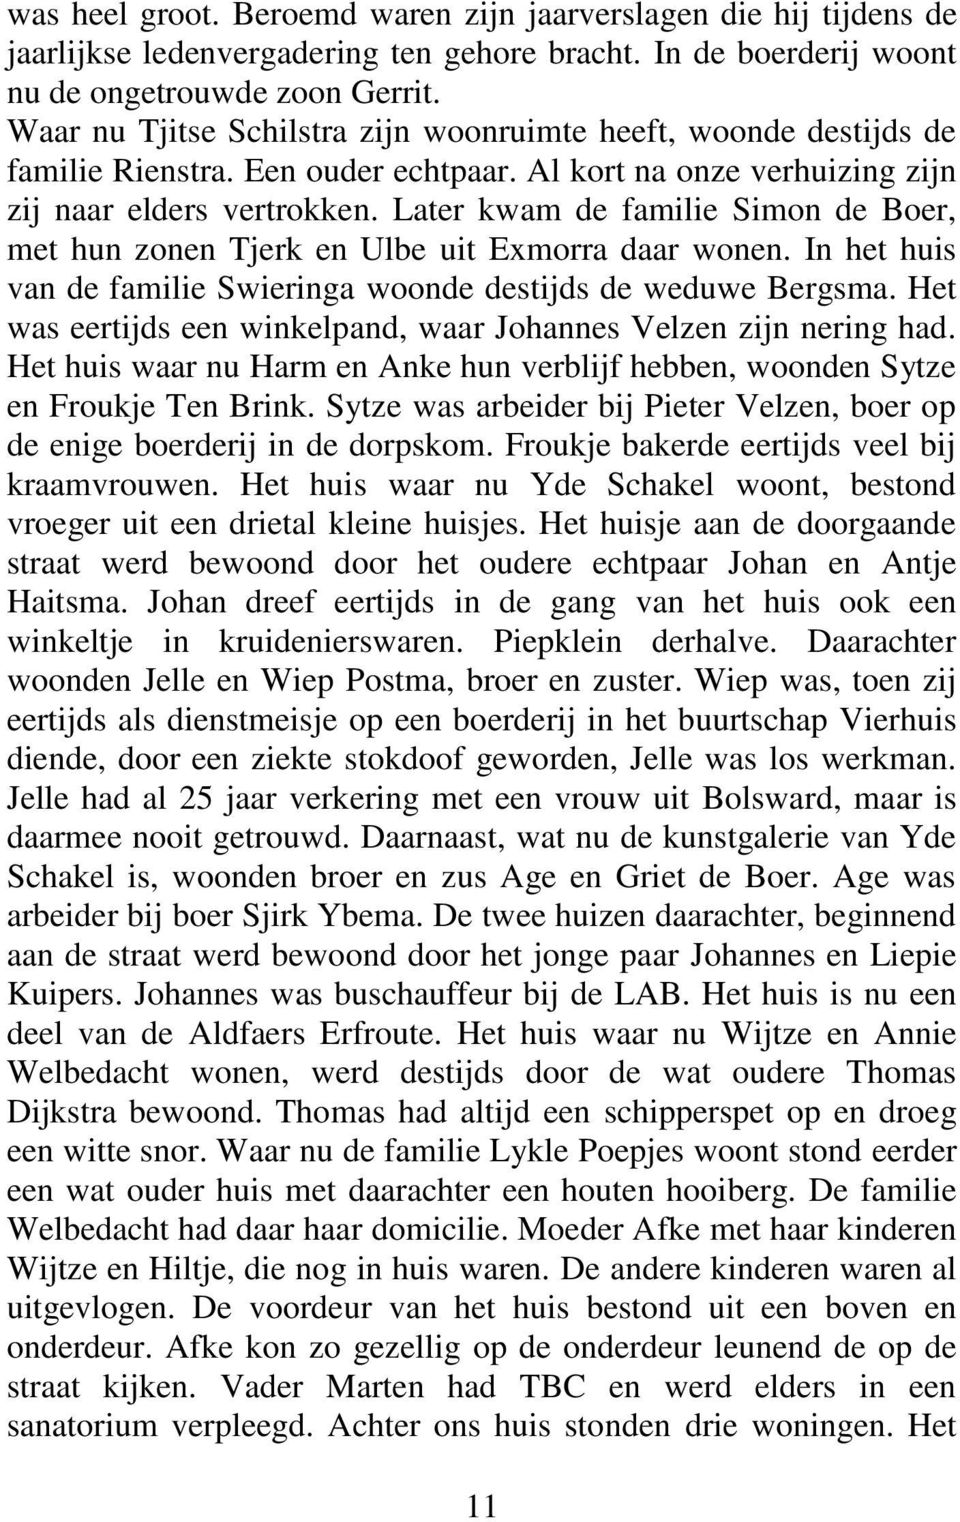 Later kwam de familie Simon de Boer, met hun zonen Tjerk en Ulbe uit Exmorra daar wonen. In het huis van de familie Swieringa woonde destijds de weduwe Bergsma.